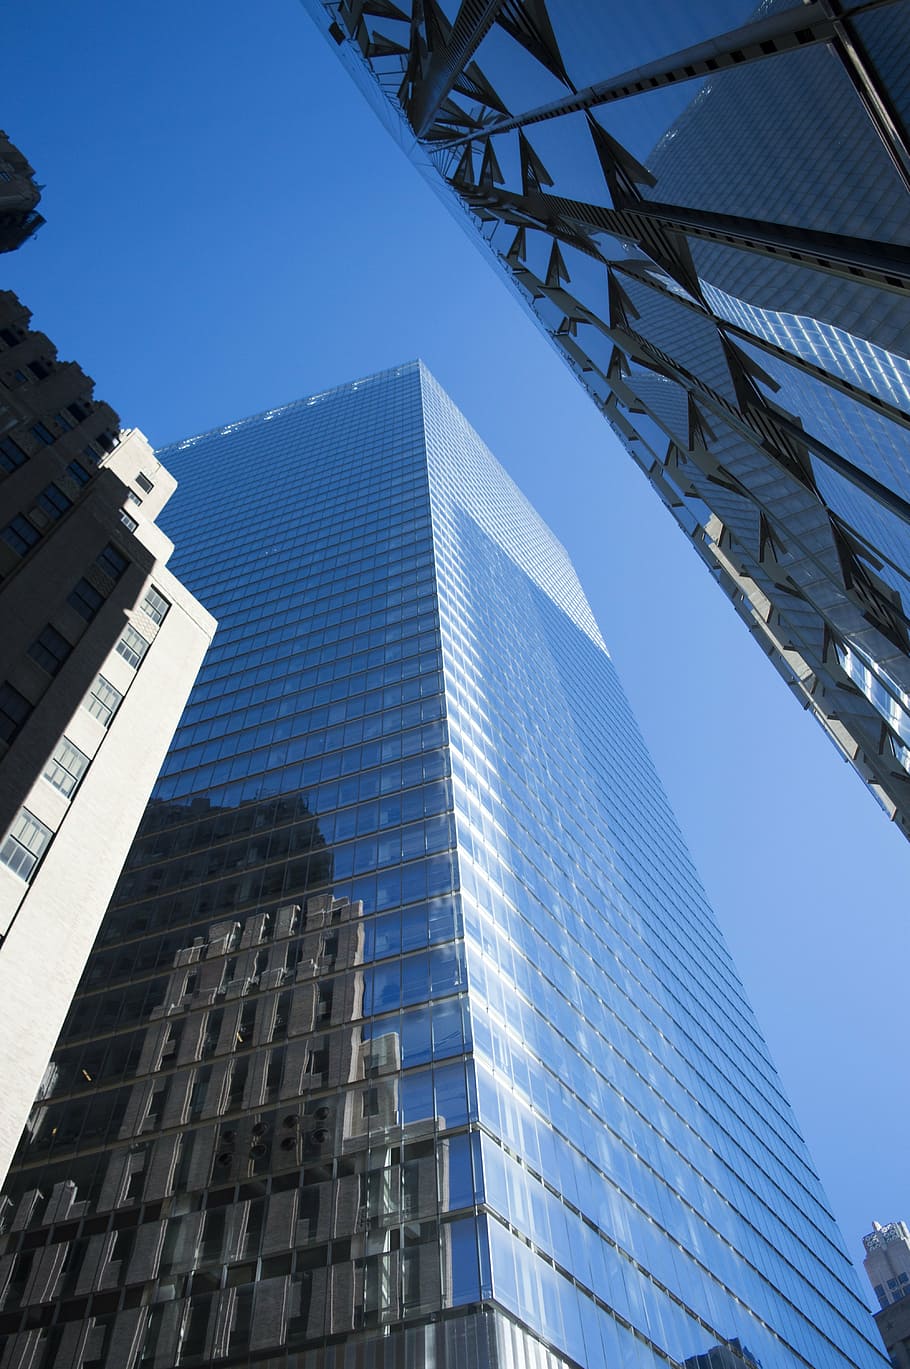 fotografia em ângulo baixo, vidro, alto, prédio alto, centro de comércio mundial, negócios, internacional, comércio, economia, azul